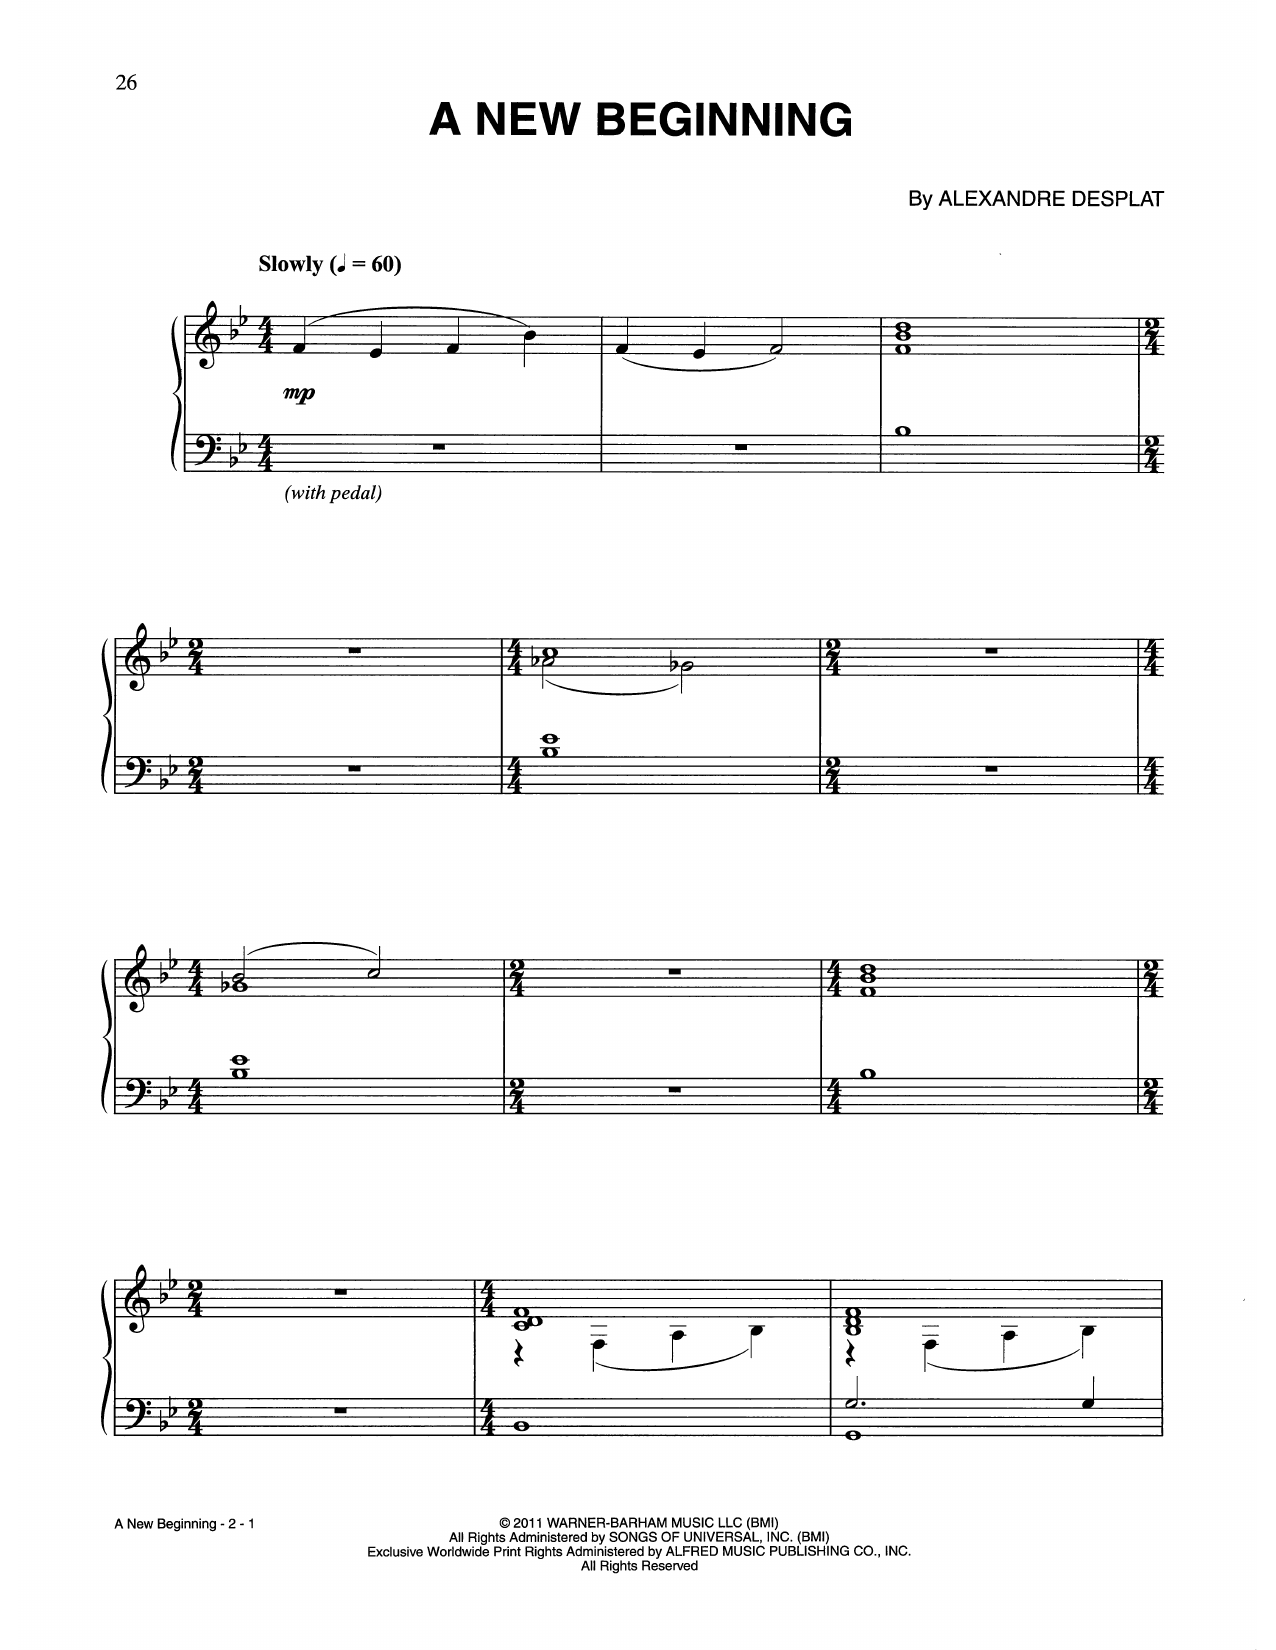 Download Alexandre Desplat A New Beginning (from Harry Potter) Sheet Music